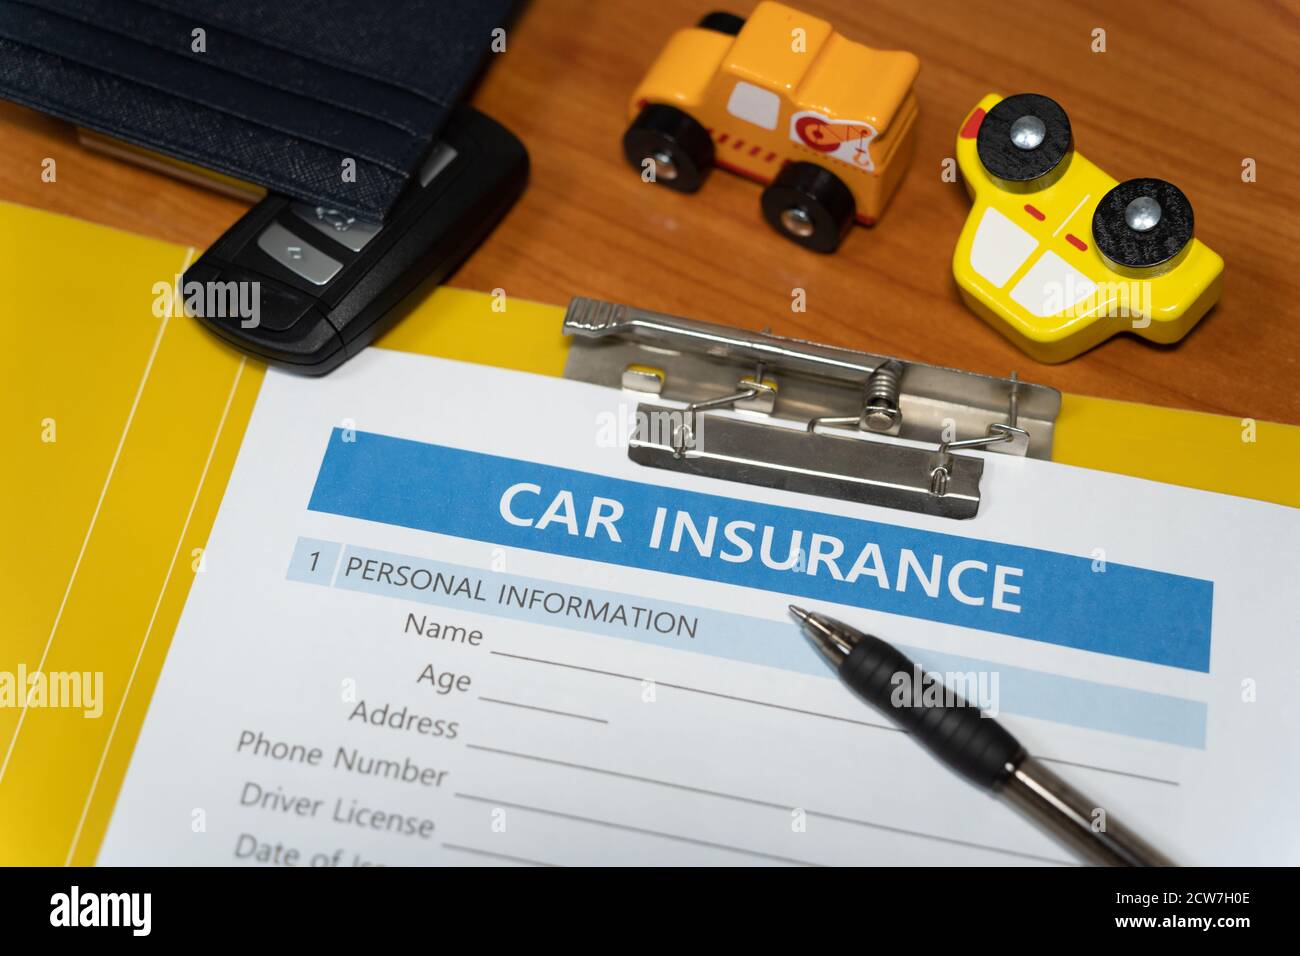 Während ich ein Bild vom Konzept des Autounfalls machte, dachte ich an eine Autoversicherung, also fügte ich Versicherungsdokumente und Requisiten hinzu. Stockfoto